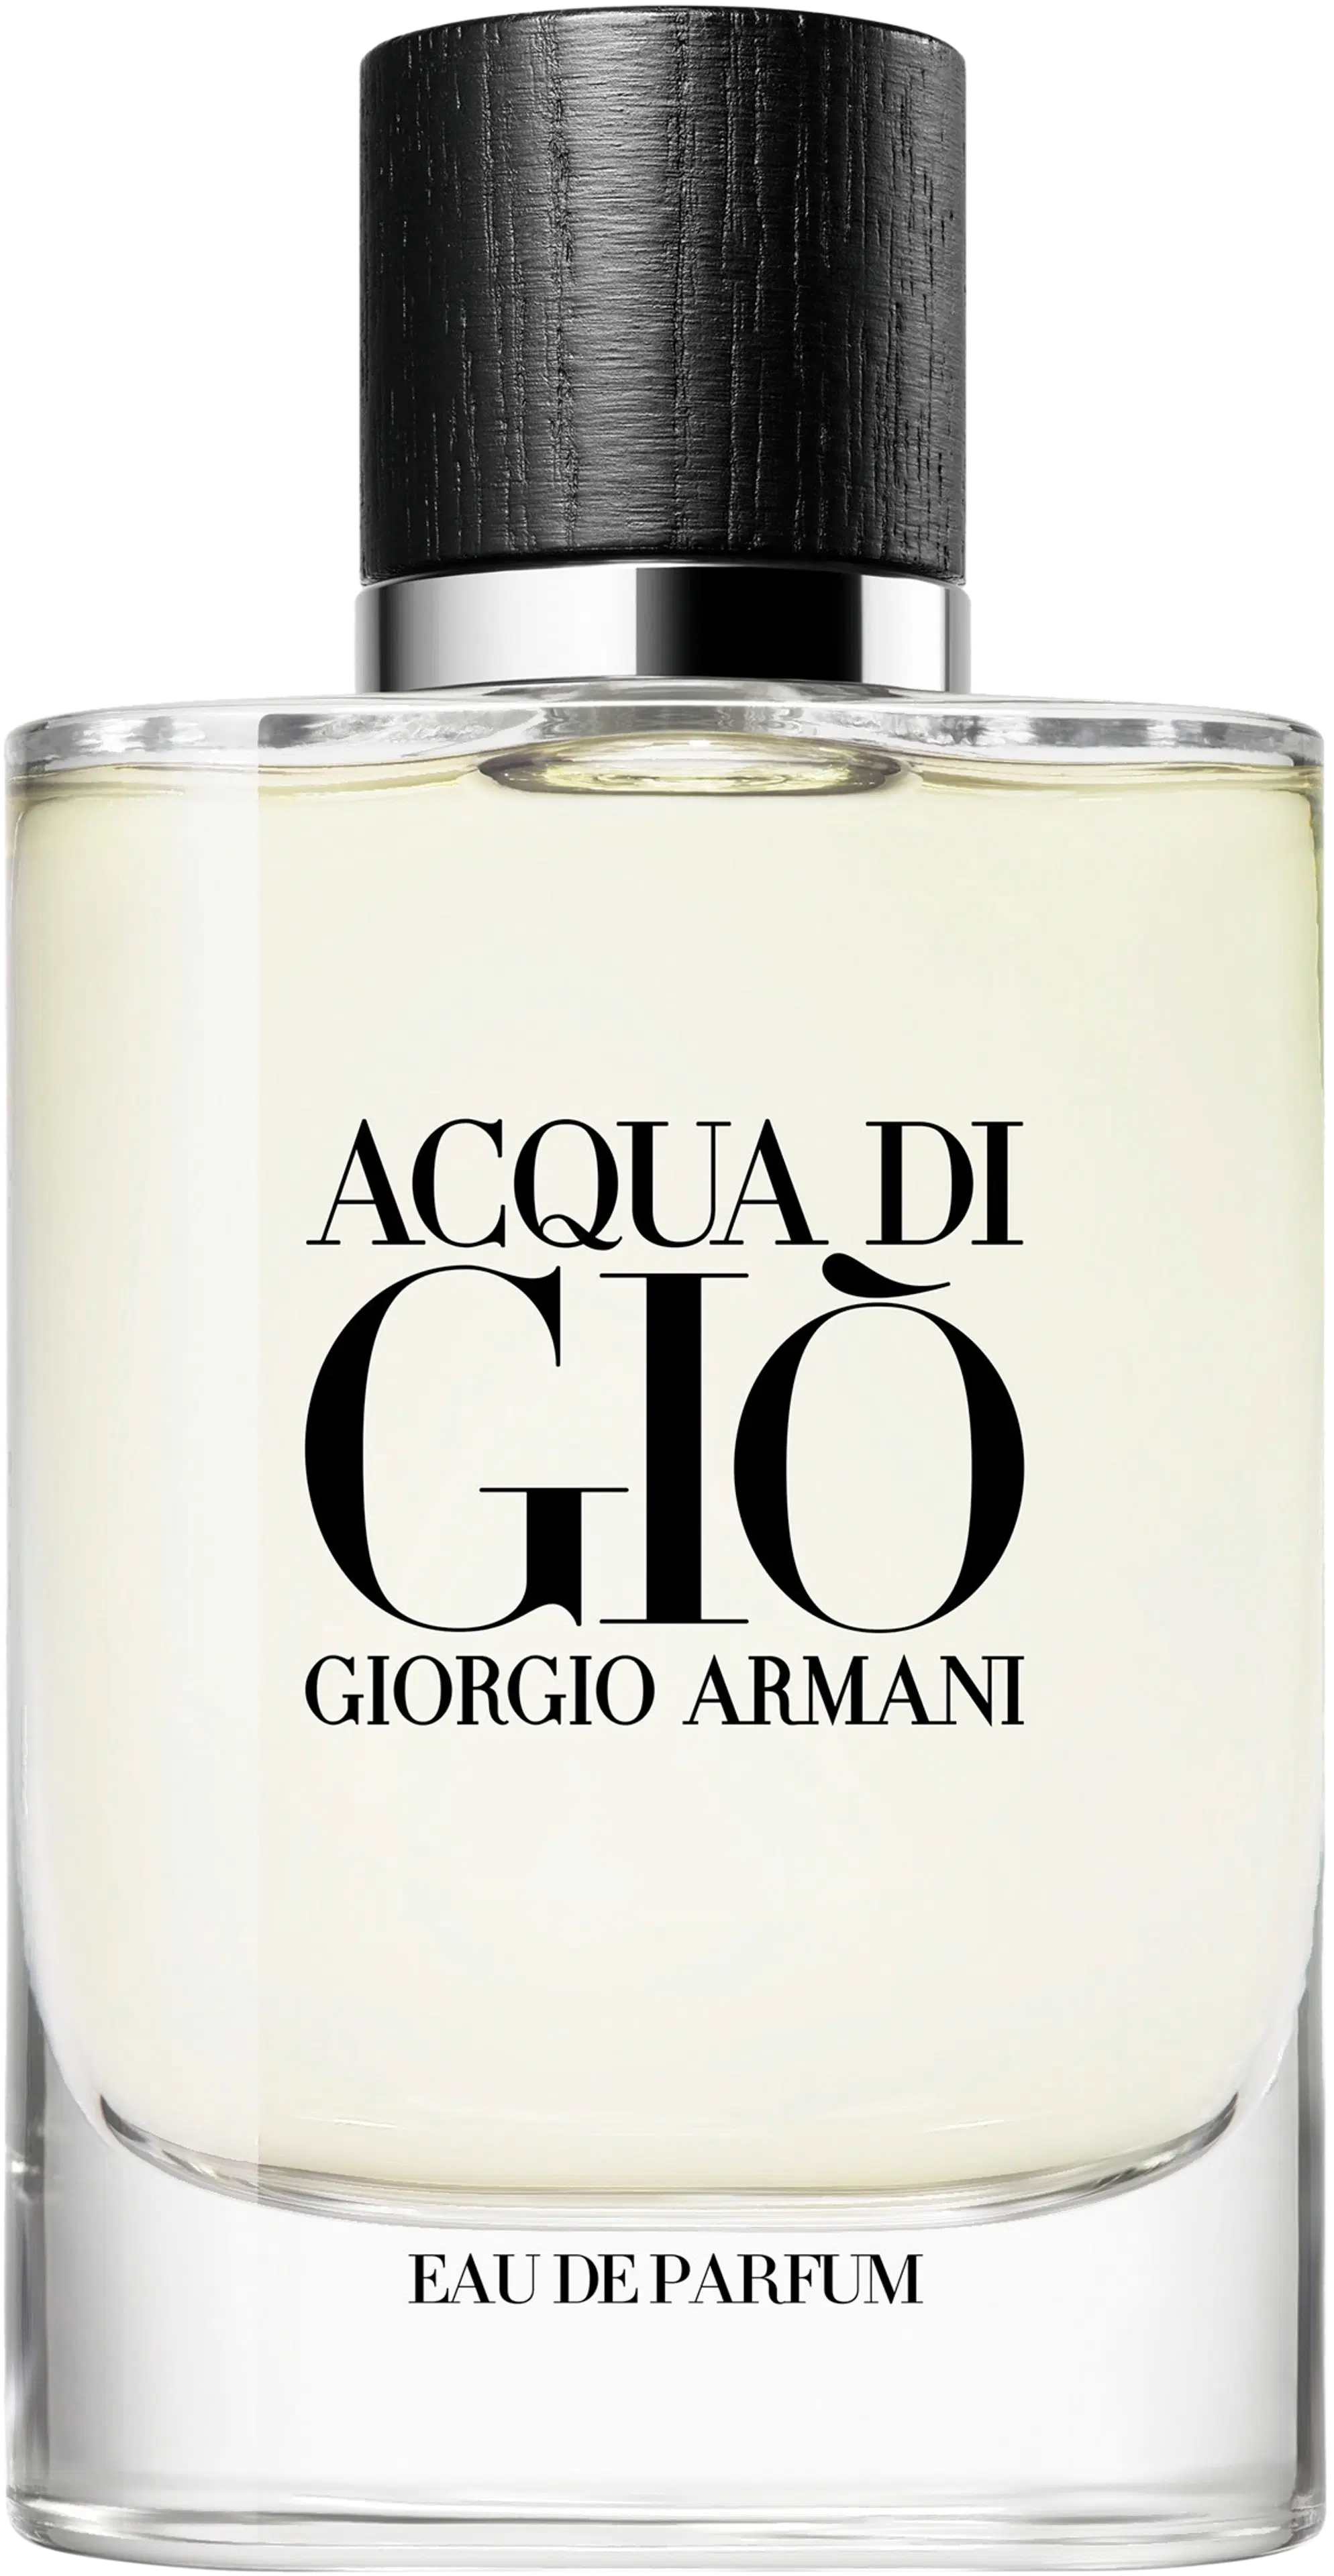 Giorgio Armani Acqua di Gio EdP tuoksu 75 ml